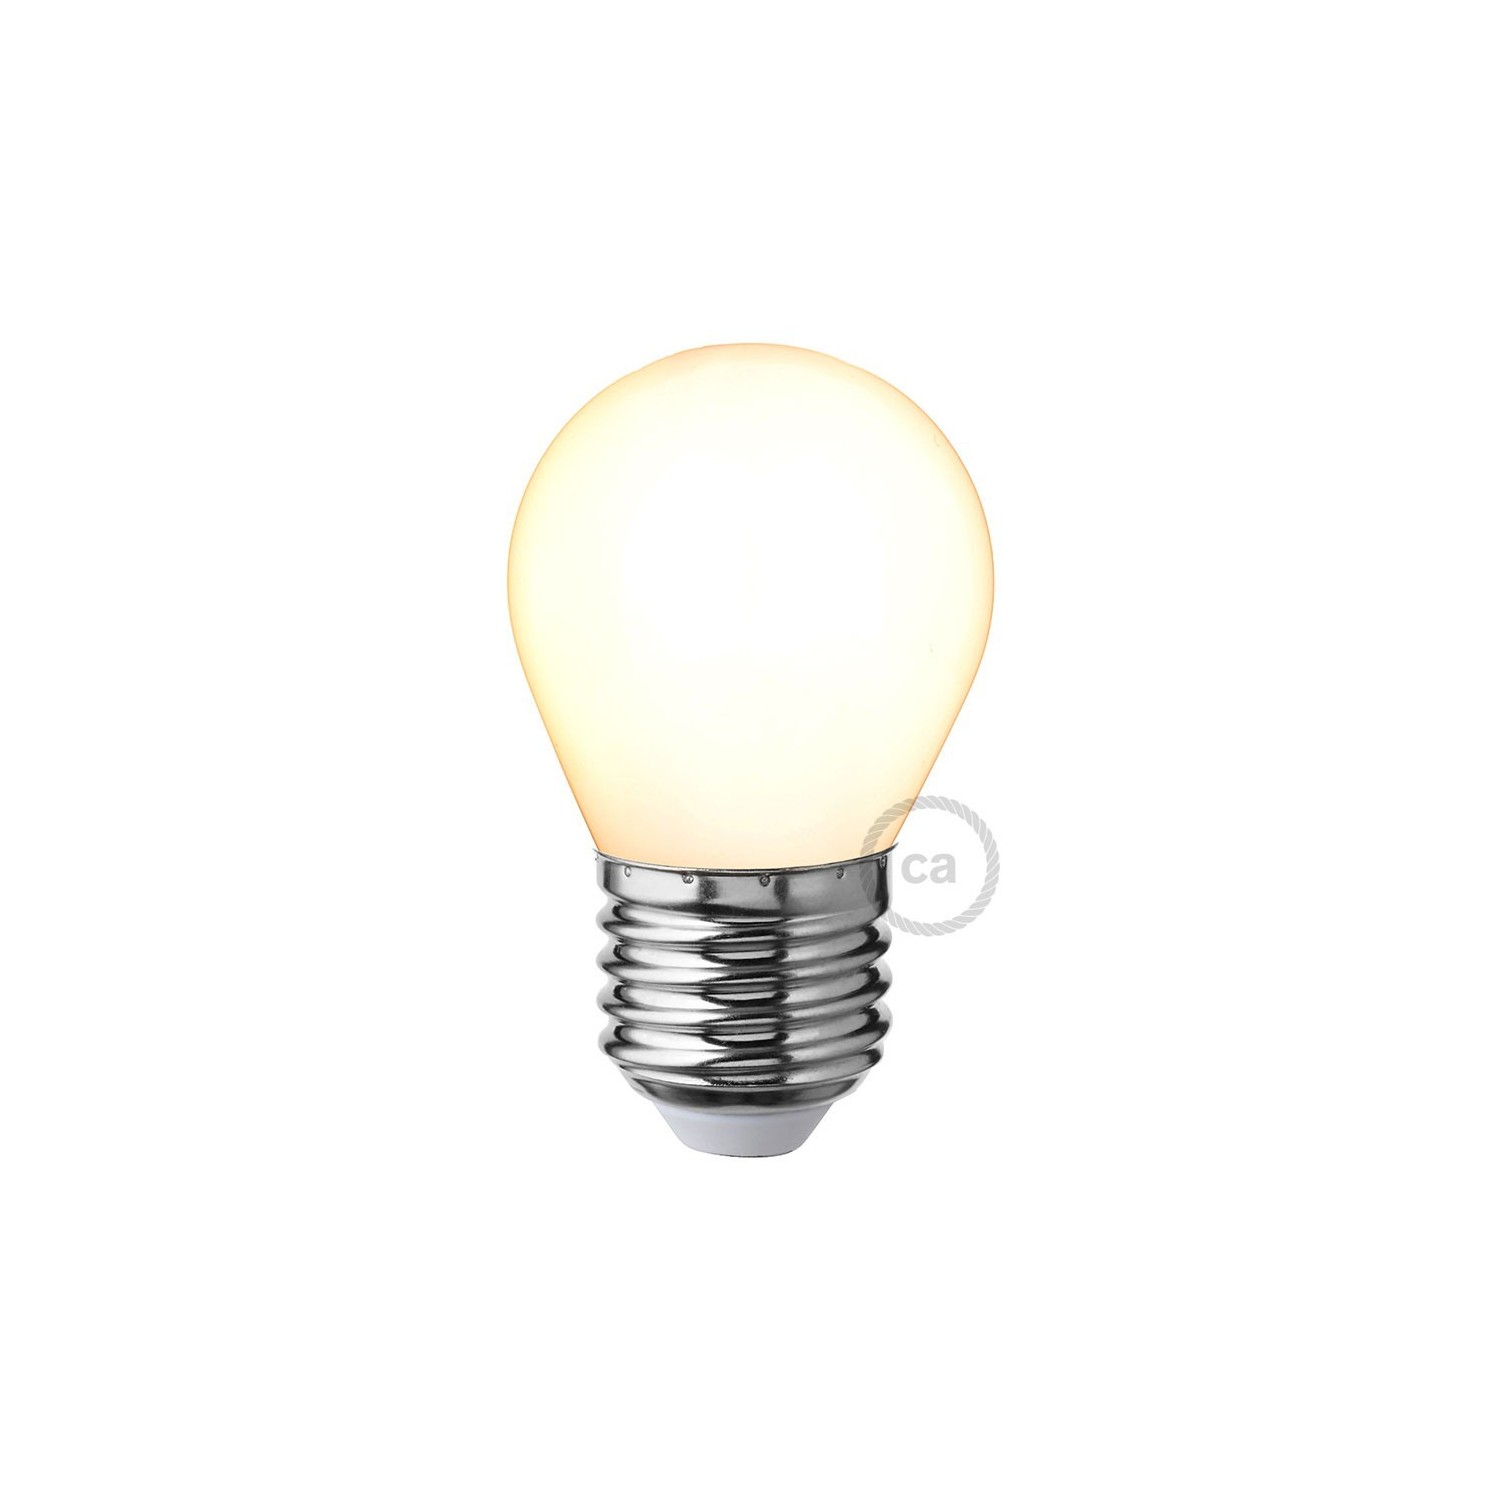 LED Milky White Light Bulb - Miniglobe G45 - 4W 300Lm E27 2700K Dimmable